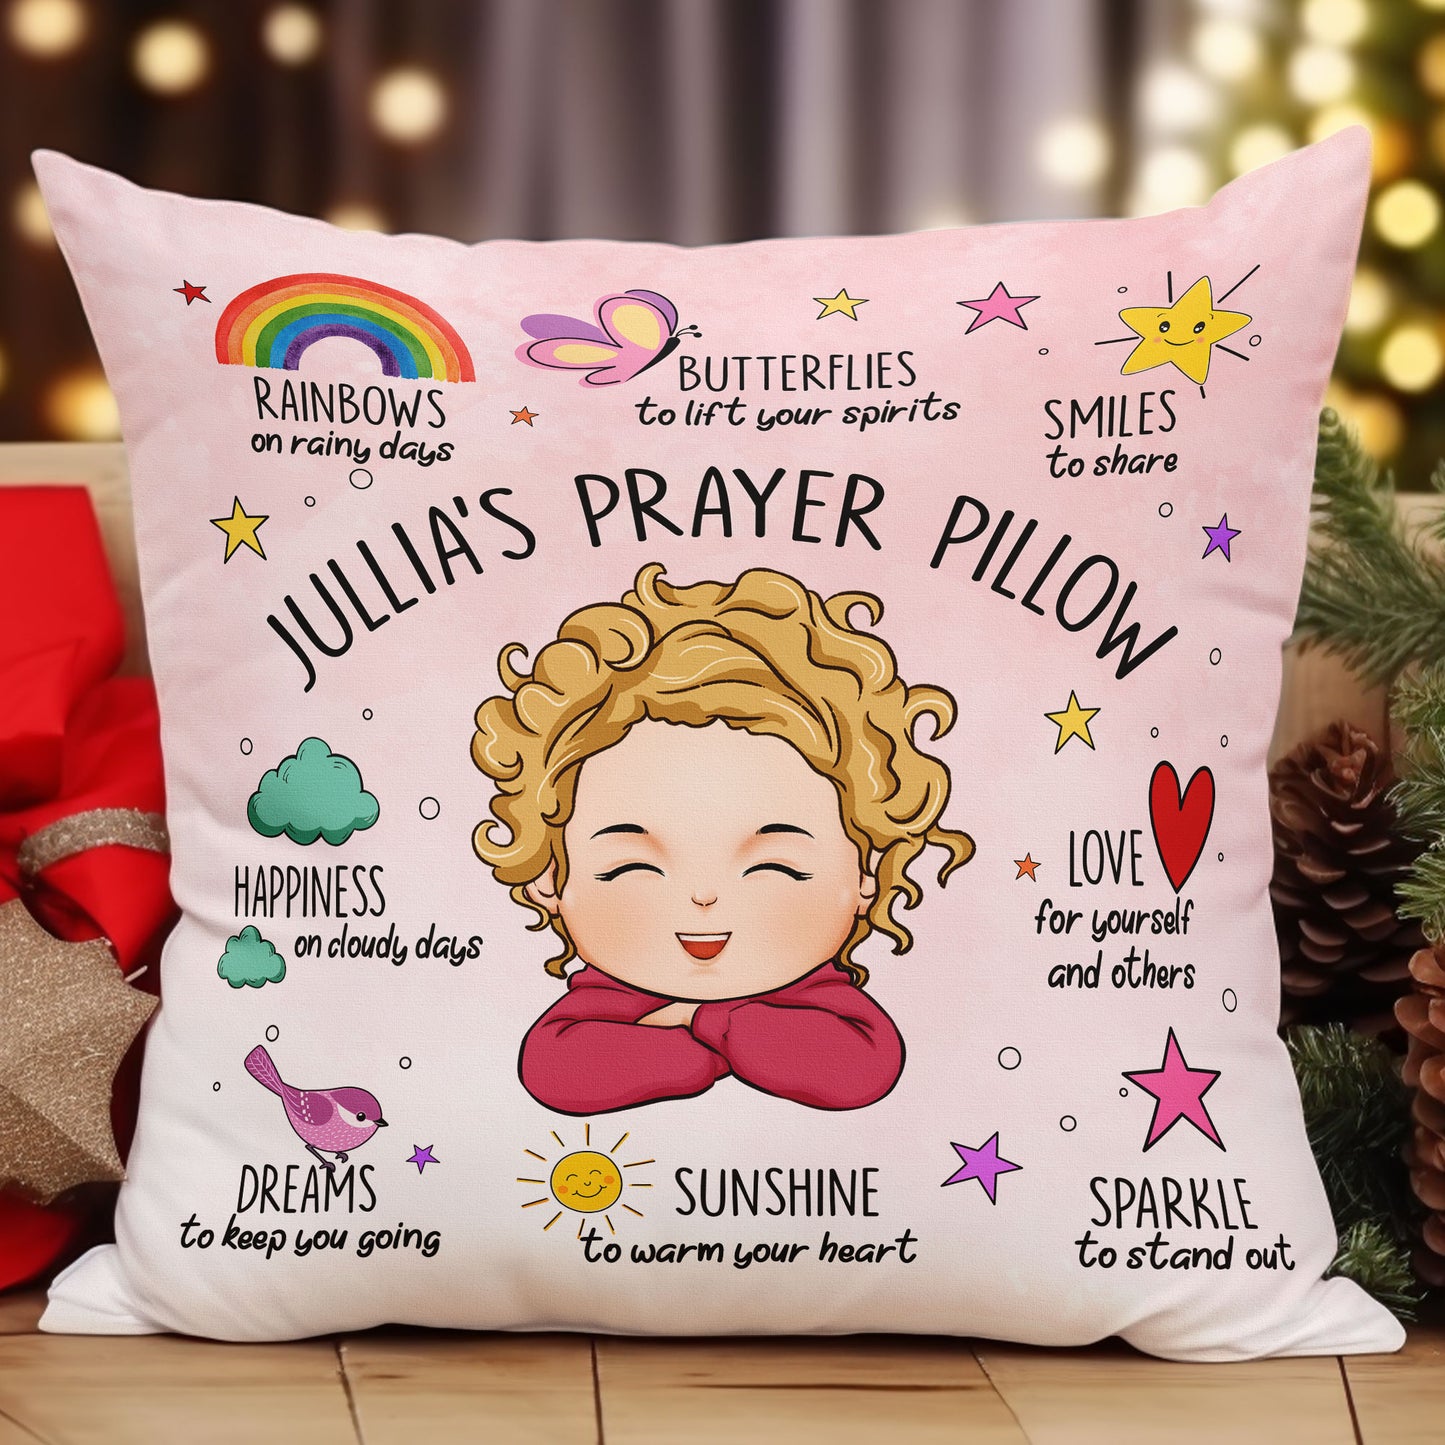 https://macorner.co/cdn/shop/files/Prayer-For-Kid-Personalized-Pillow-_Insert-Included_1.jpg?v=1695692844&width=1445